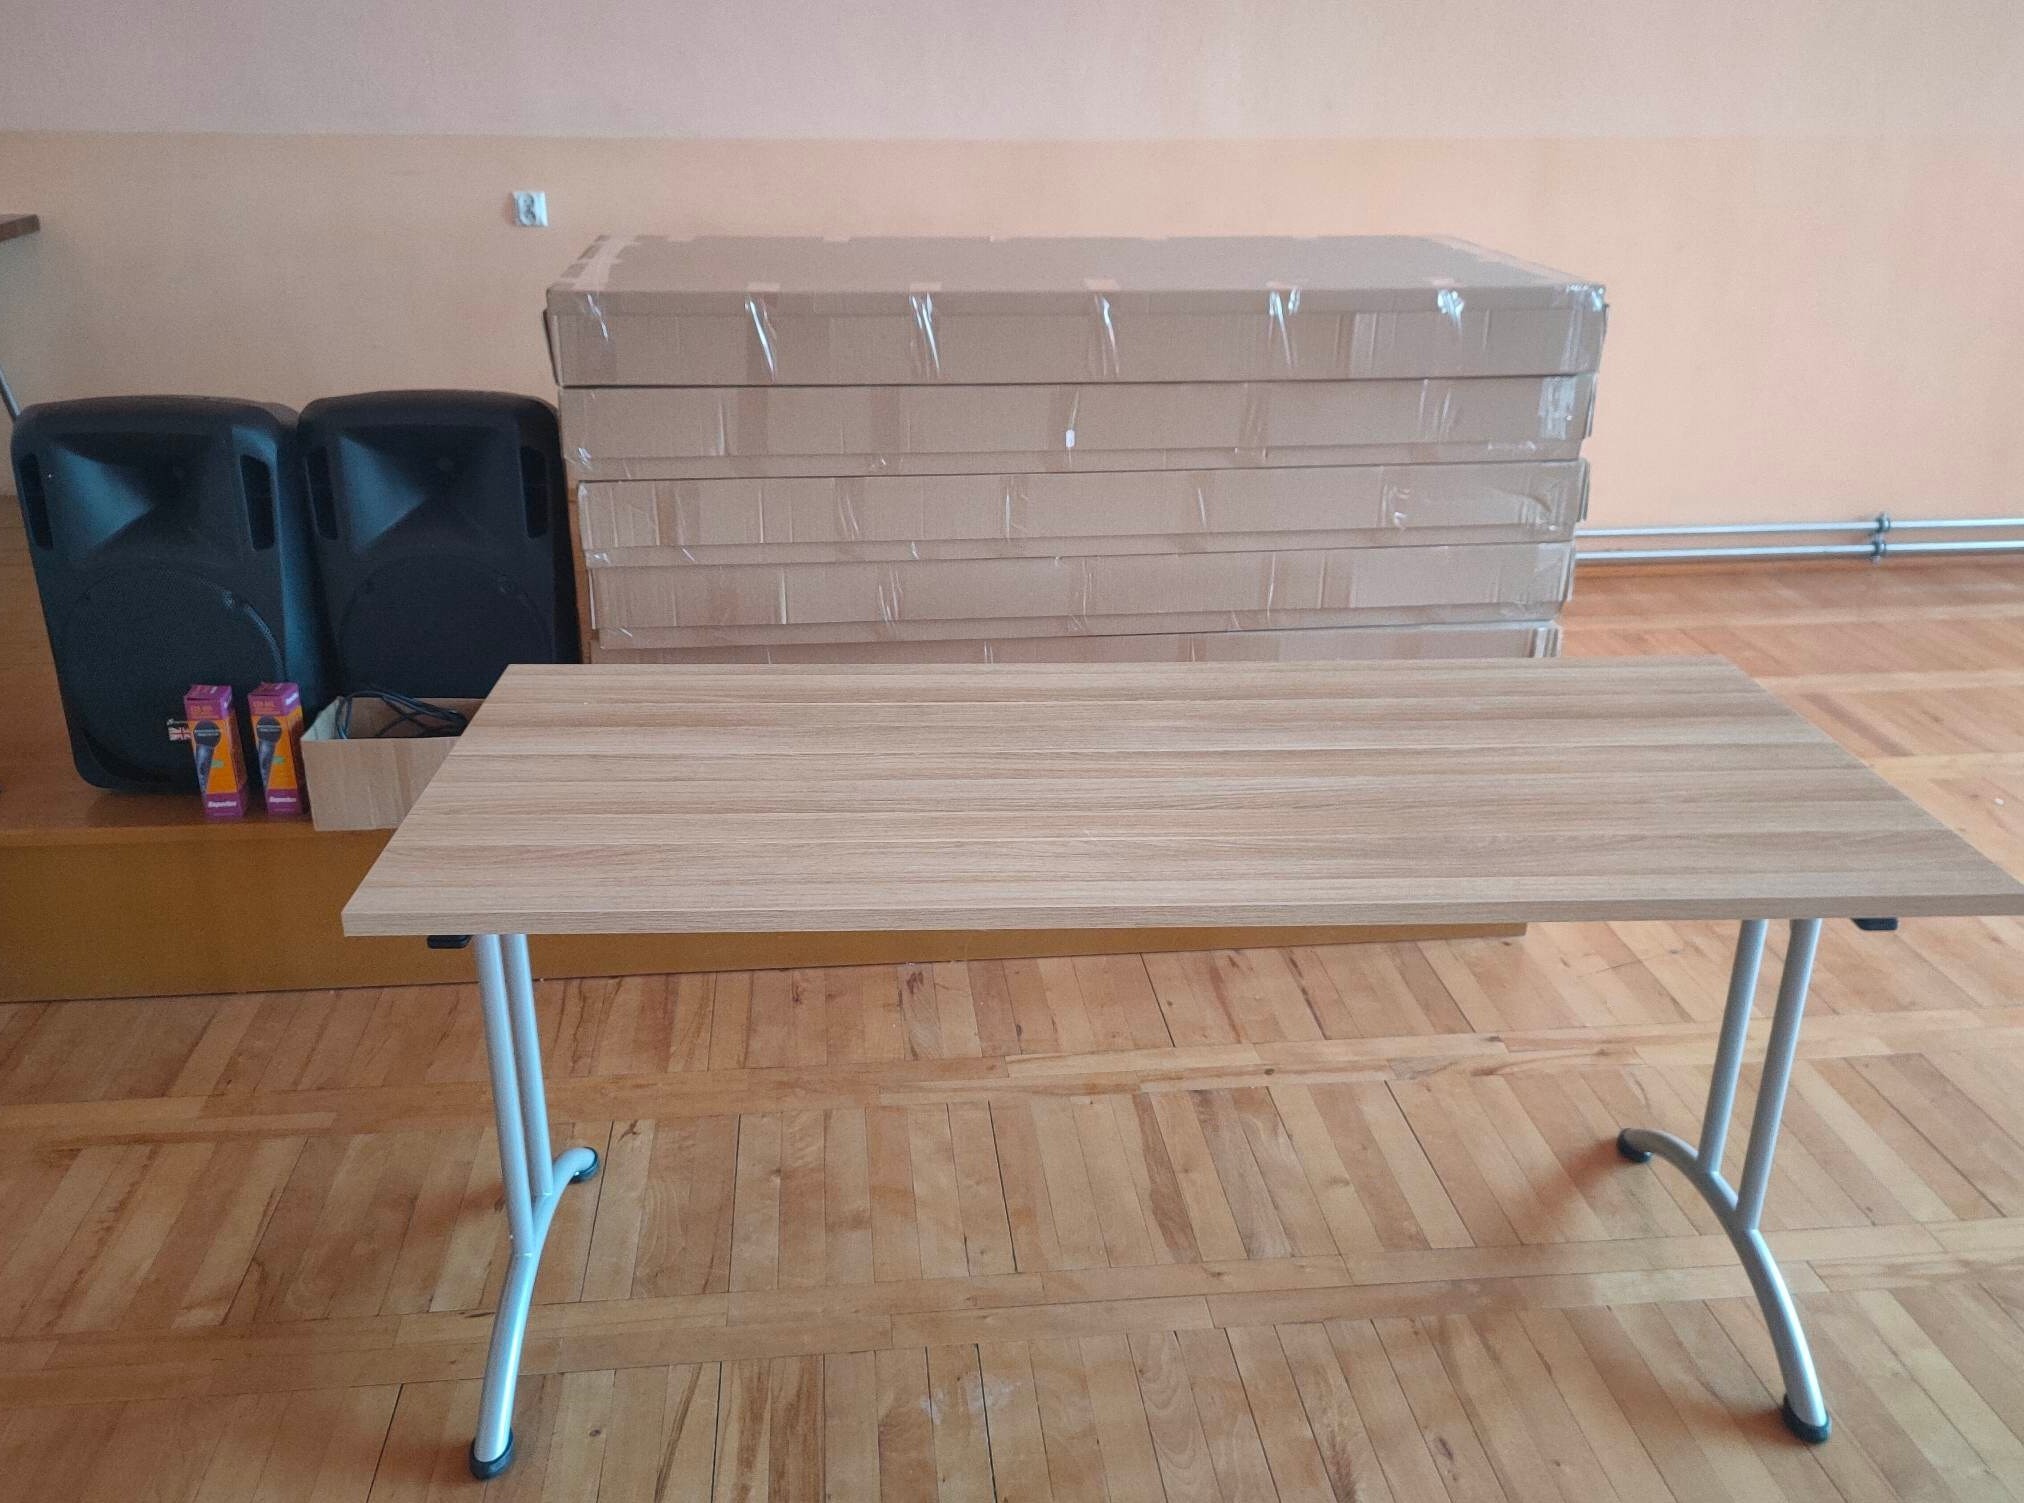 zdjęcie przedstawia rozłożony stół z drewnianym blatem 